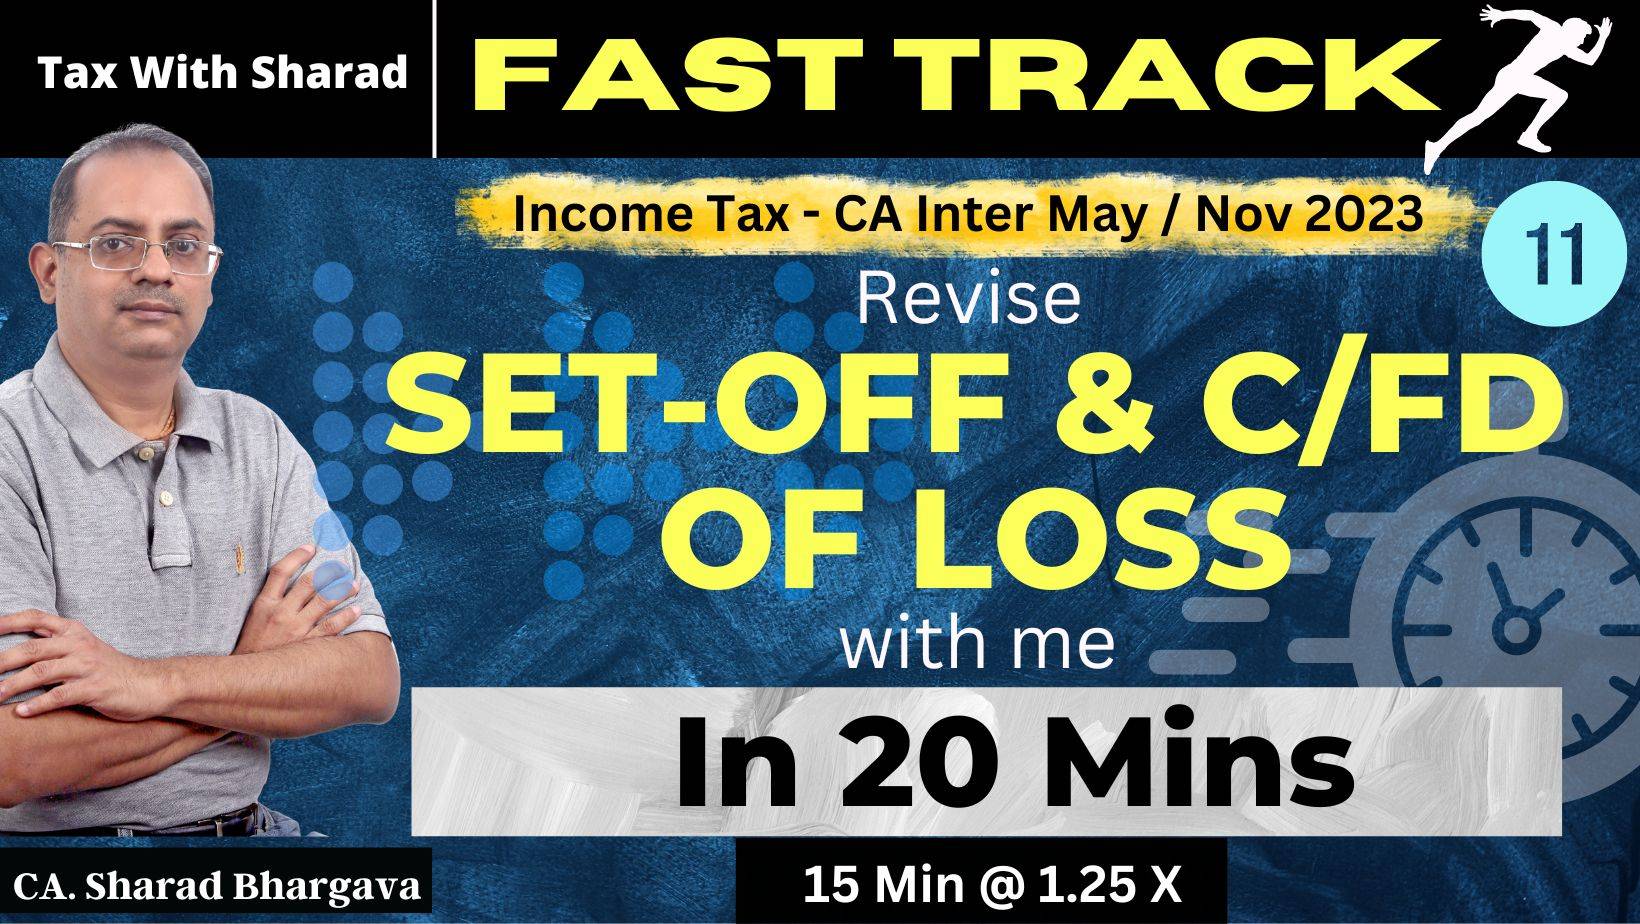 Fast Track Revision (DT)/ 11 - Set-off & C/fd of Loss / CA Inter May/ Nov 2023 / CA. Sharad Bhargava